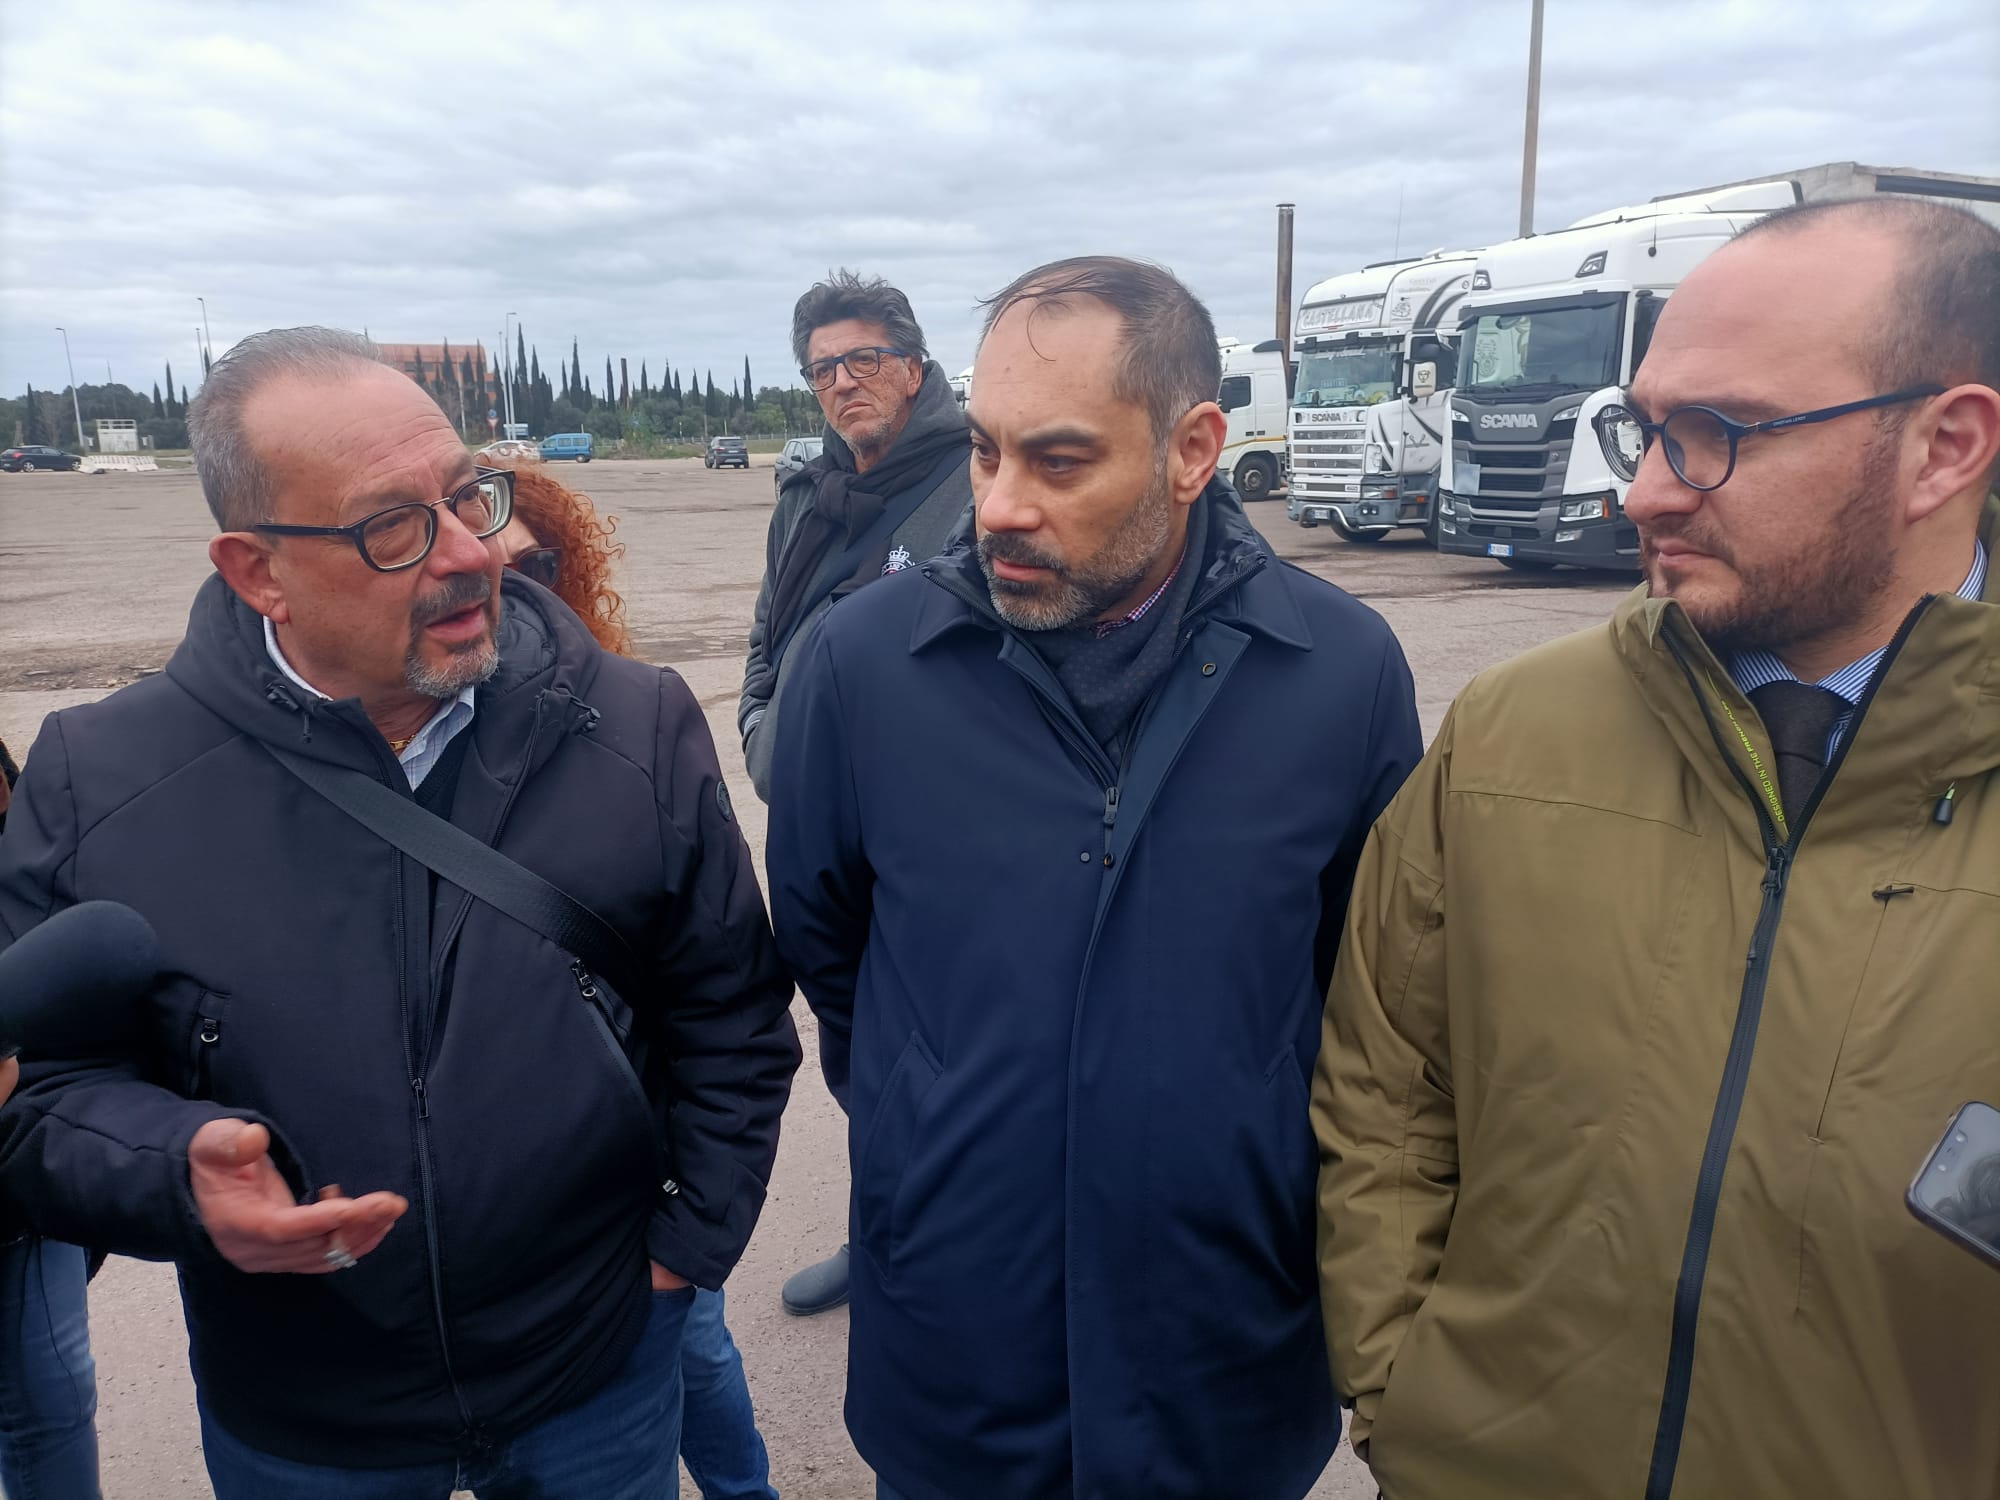 “Autotrasportatori in Lotta: L’Appello Accorato al Sindaco Melucci per Salvare il Territorio Tarantino